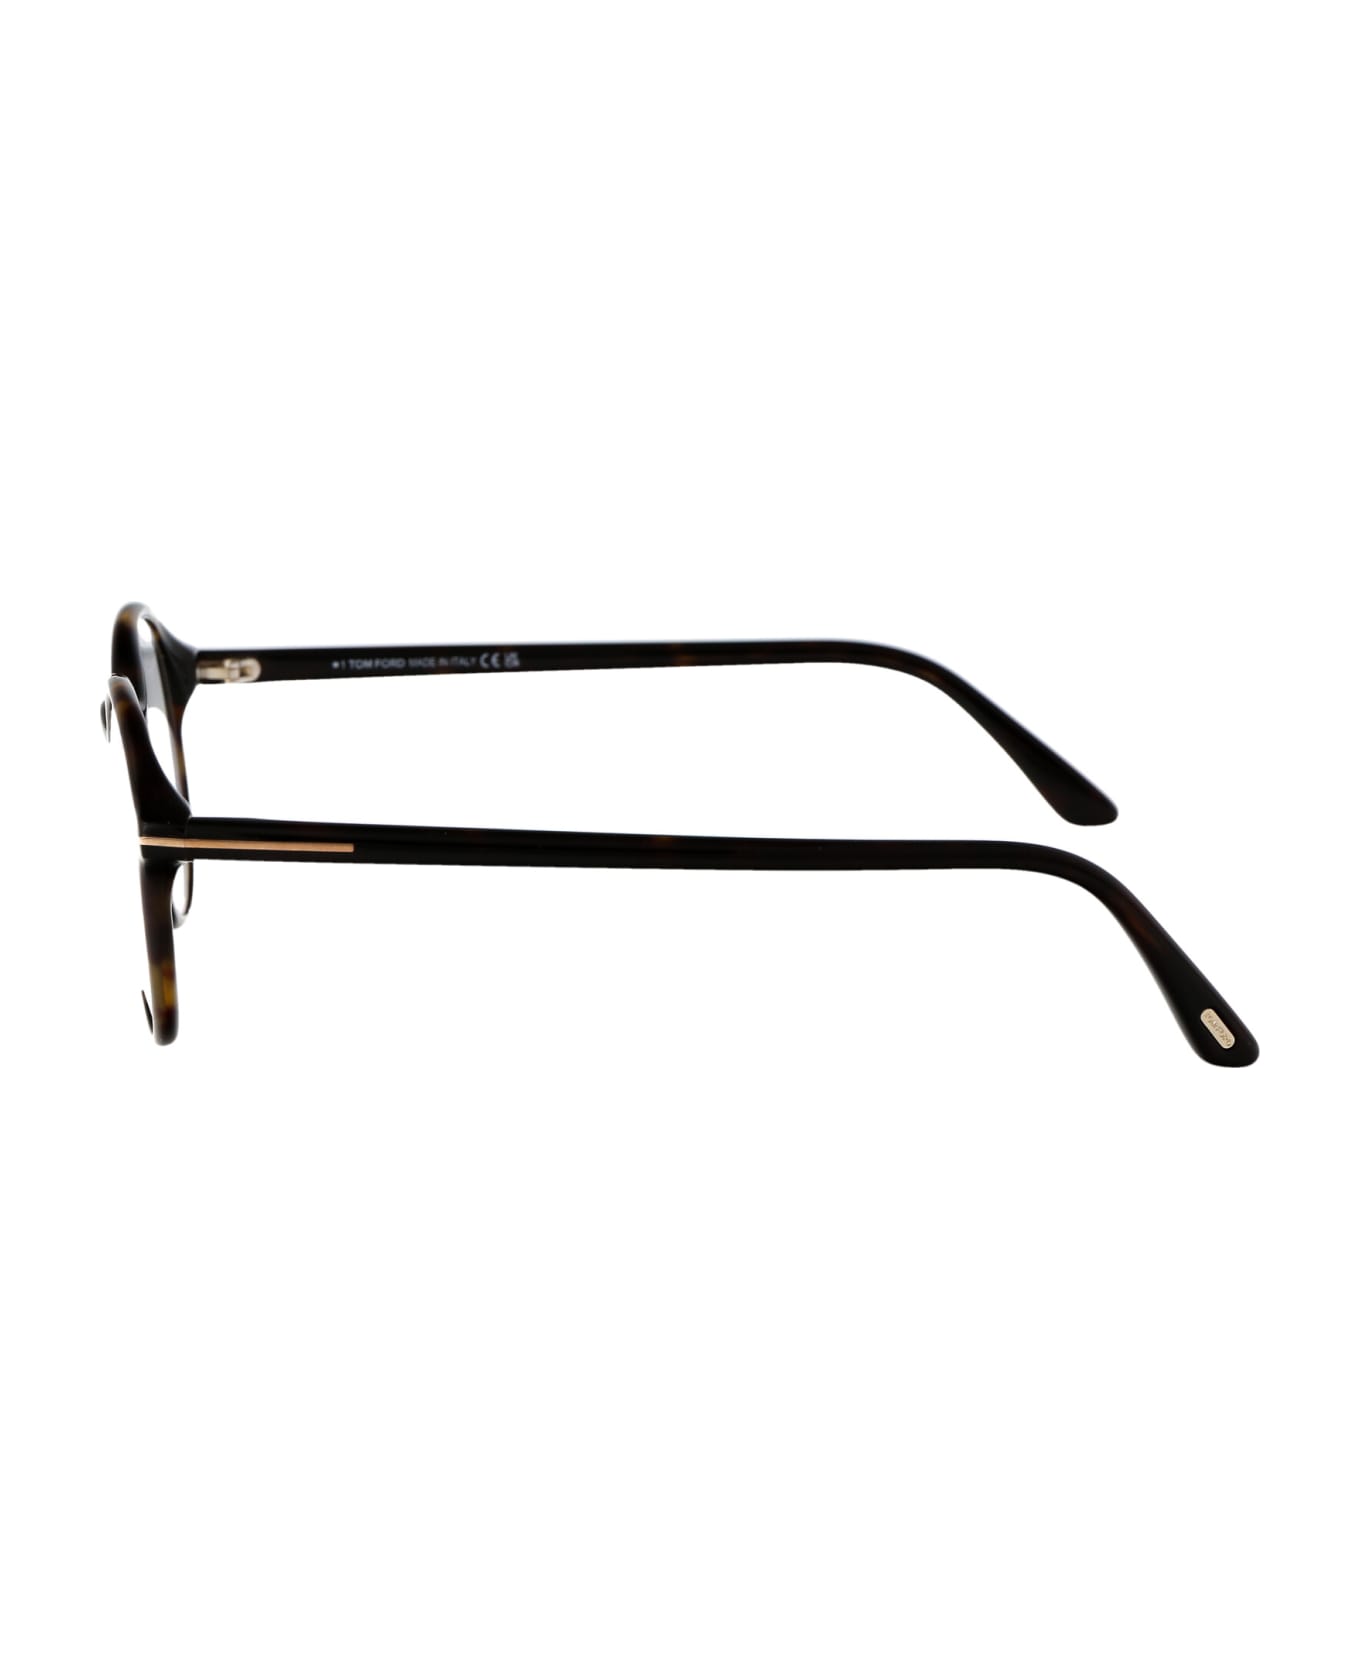 Tom Ford Eyewear Ft5867-b Glasses - 052 Avana Scura アイウェア